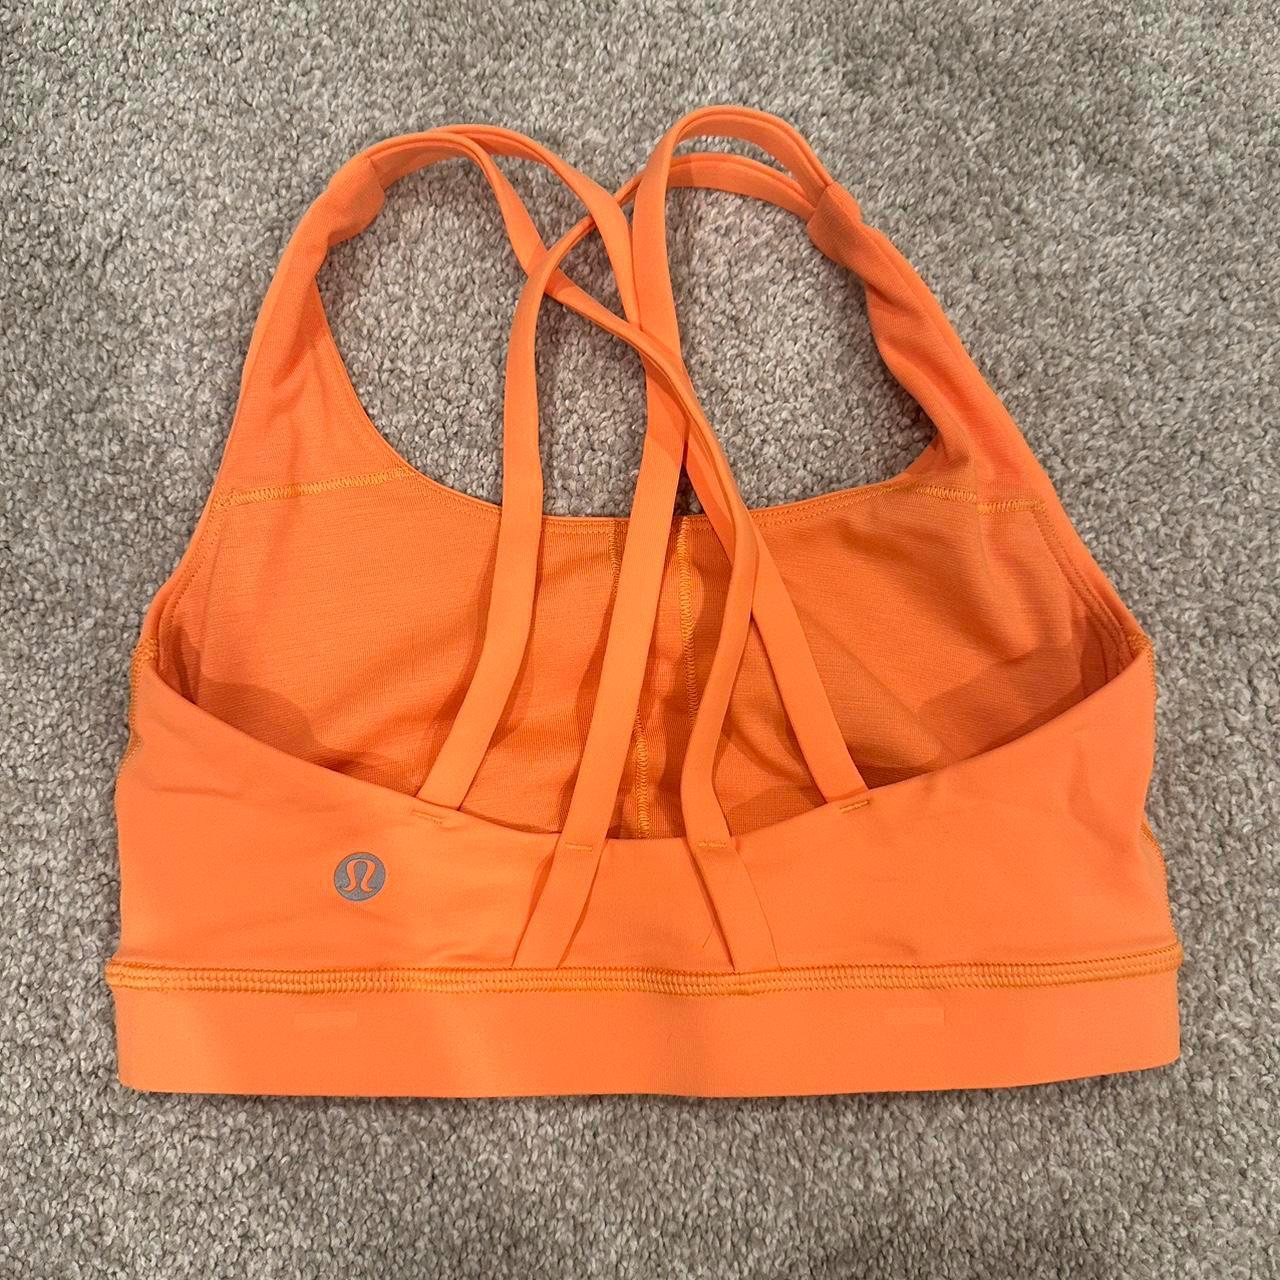 Orange sports-bra - Depop